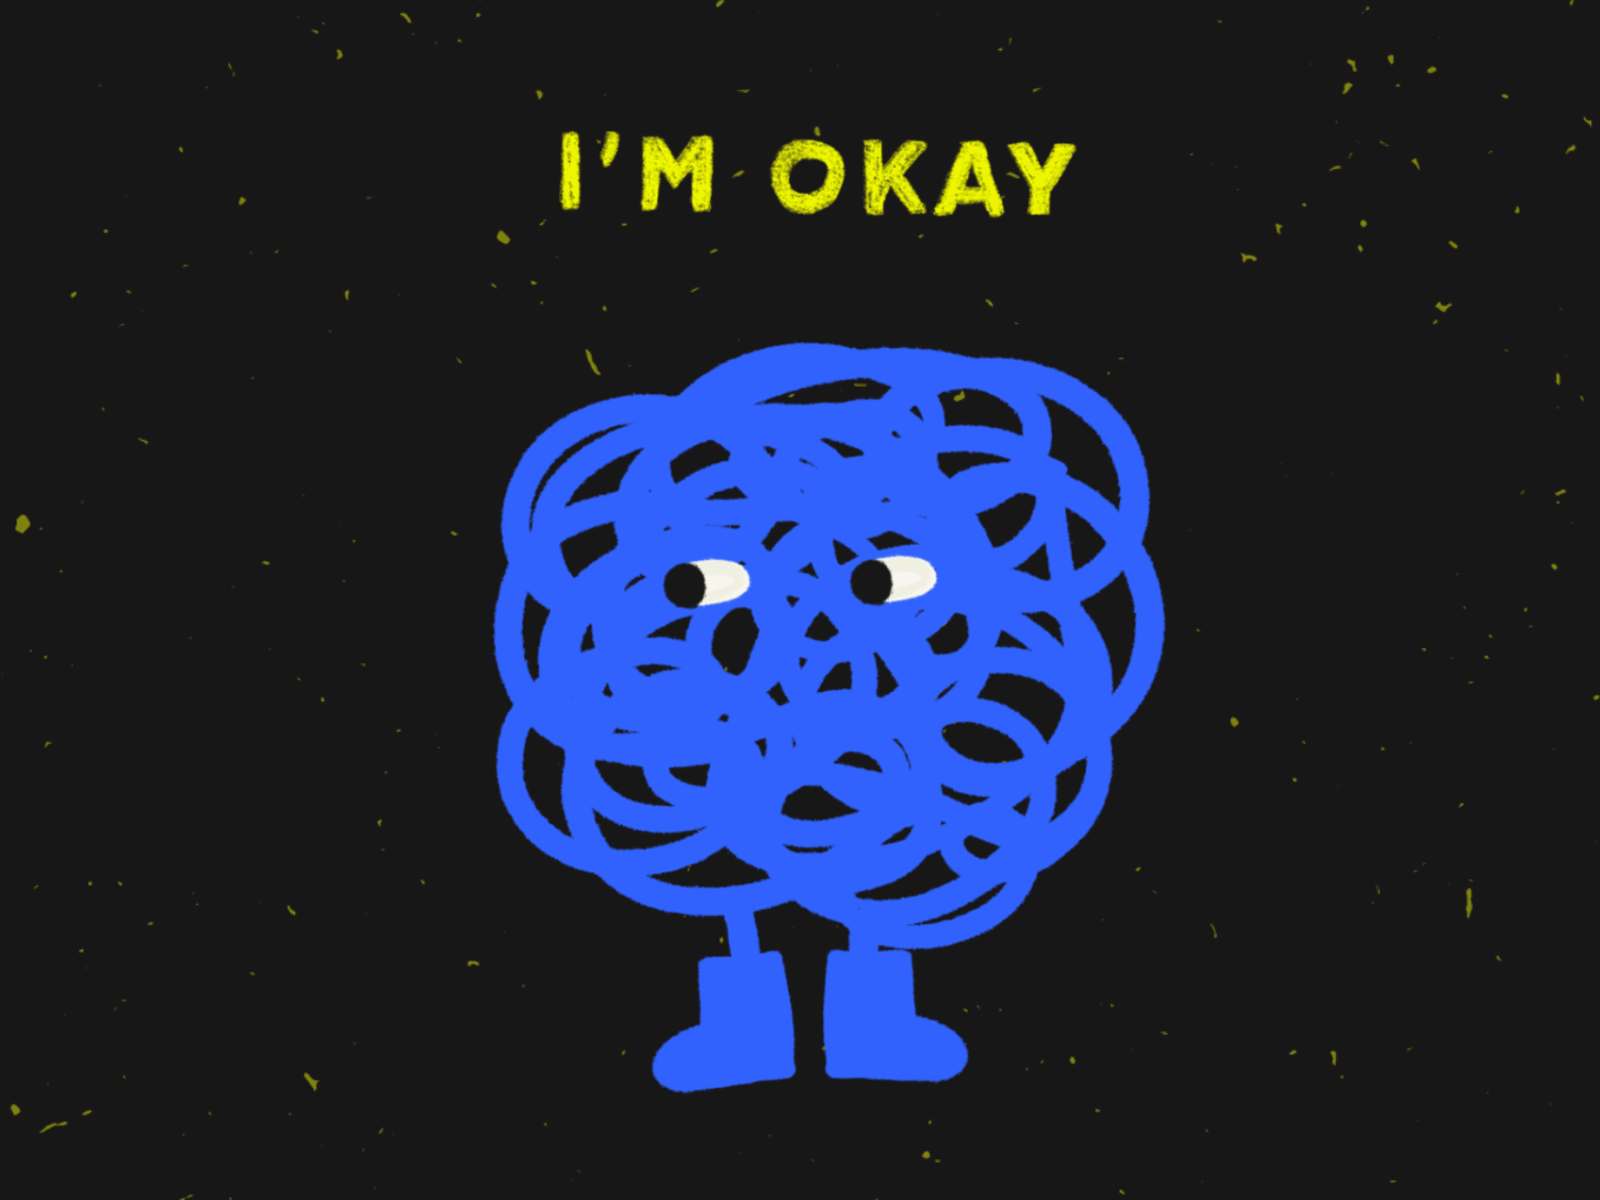 I'M OKAY (I think).